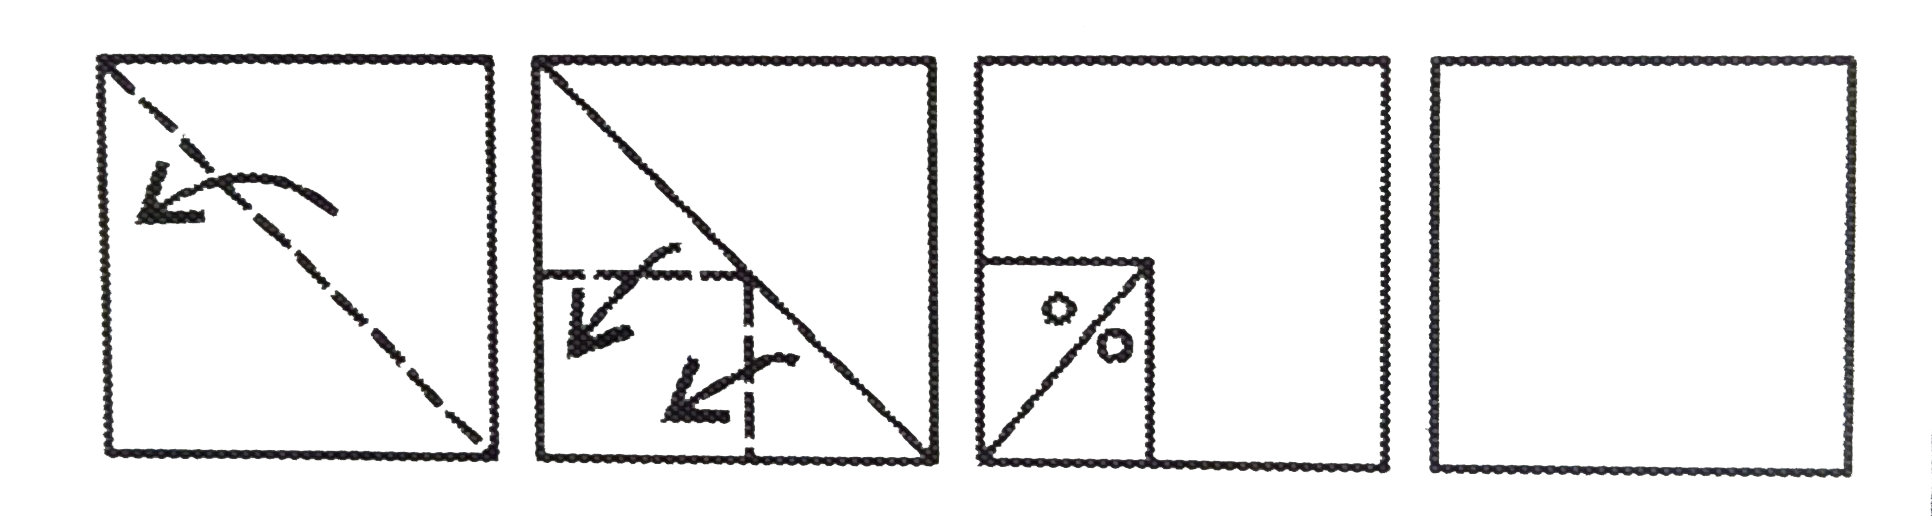 निम्नलिखित उत्तर - आकृतियों में से यह ज्ञात कीजिए कि निचे दिखाये अनुसार कागज को मोड़ने , पंच करने  तथा खोलने के बाद उसकी आकृति कैसी दिखाई देगी ।    प्रश्न आकृतियाँ :